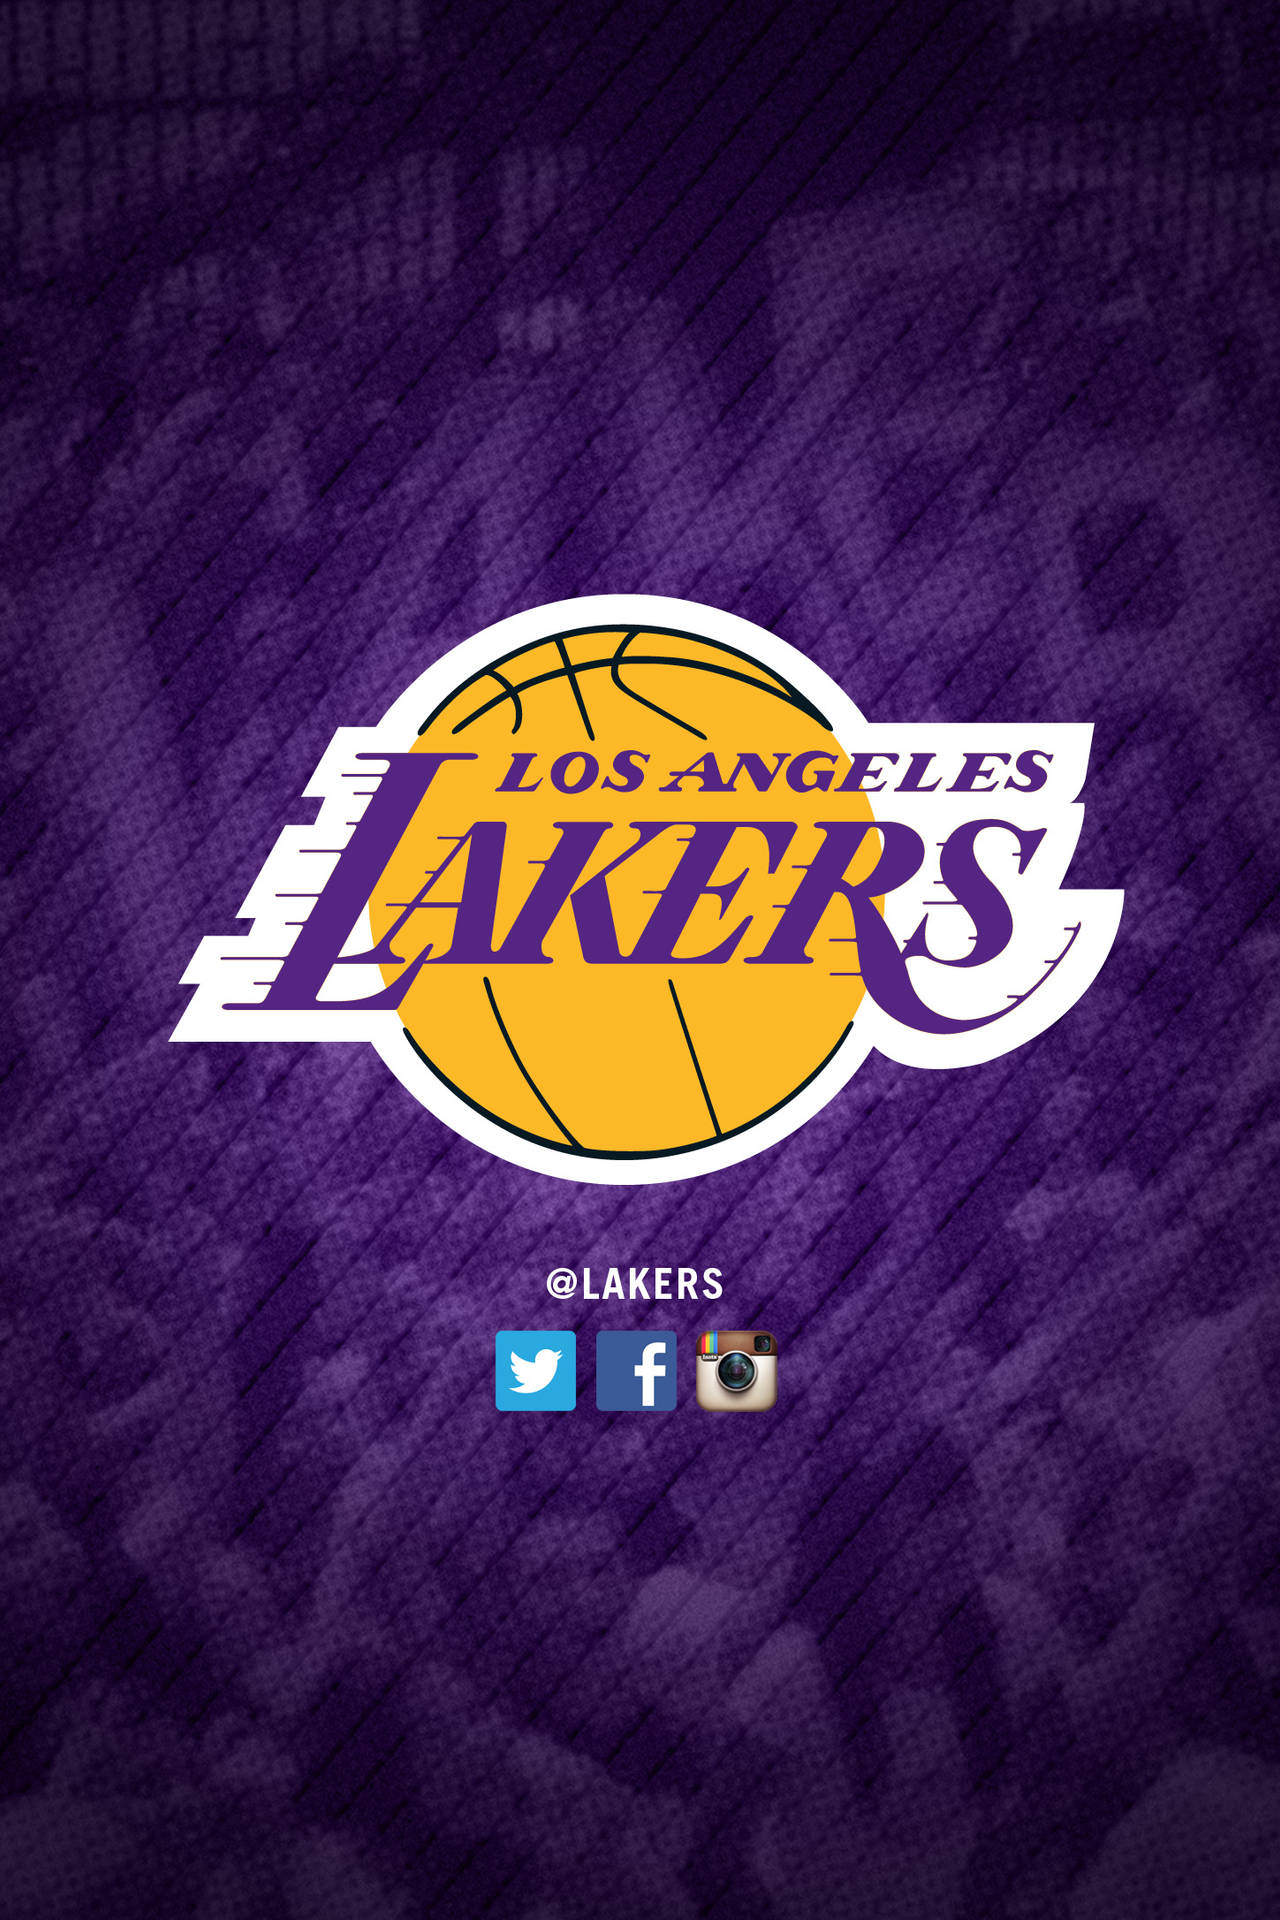 Zeigensie Ihren Stolz Auf Die Lakers Mit Einem Lakers-iphone Wallpaper